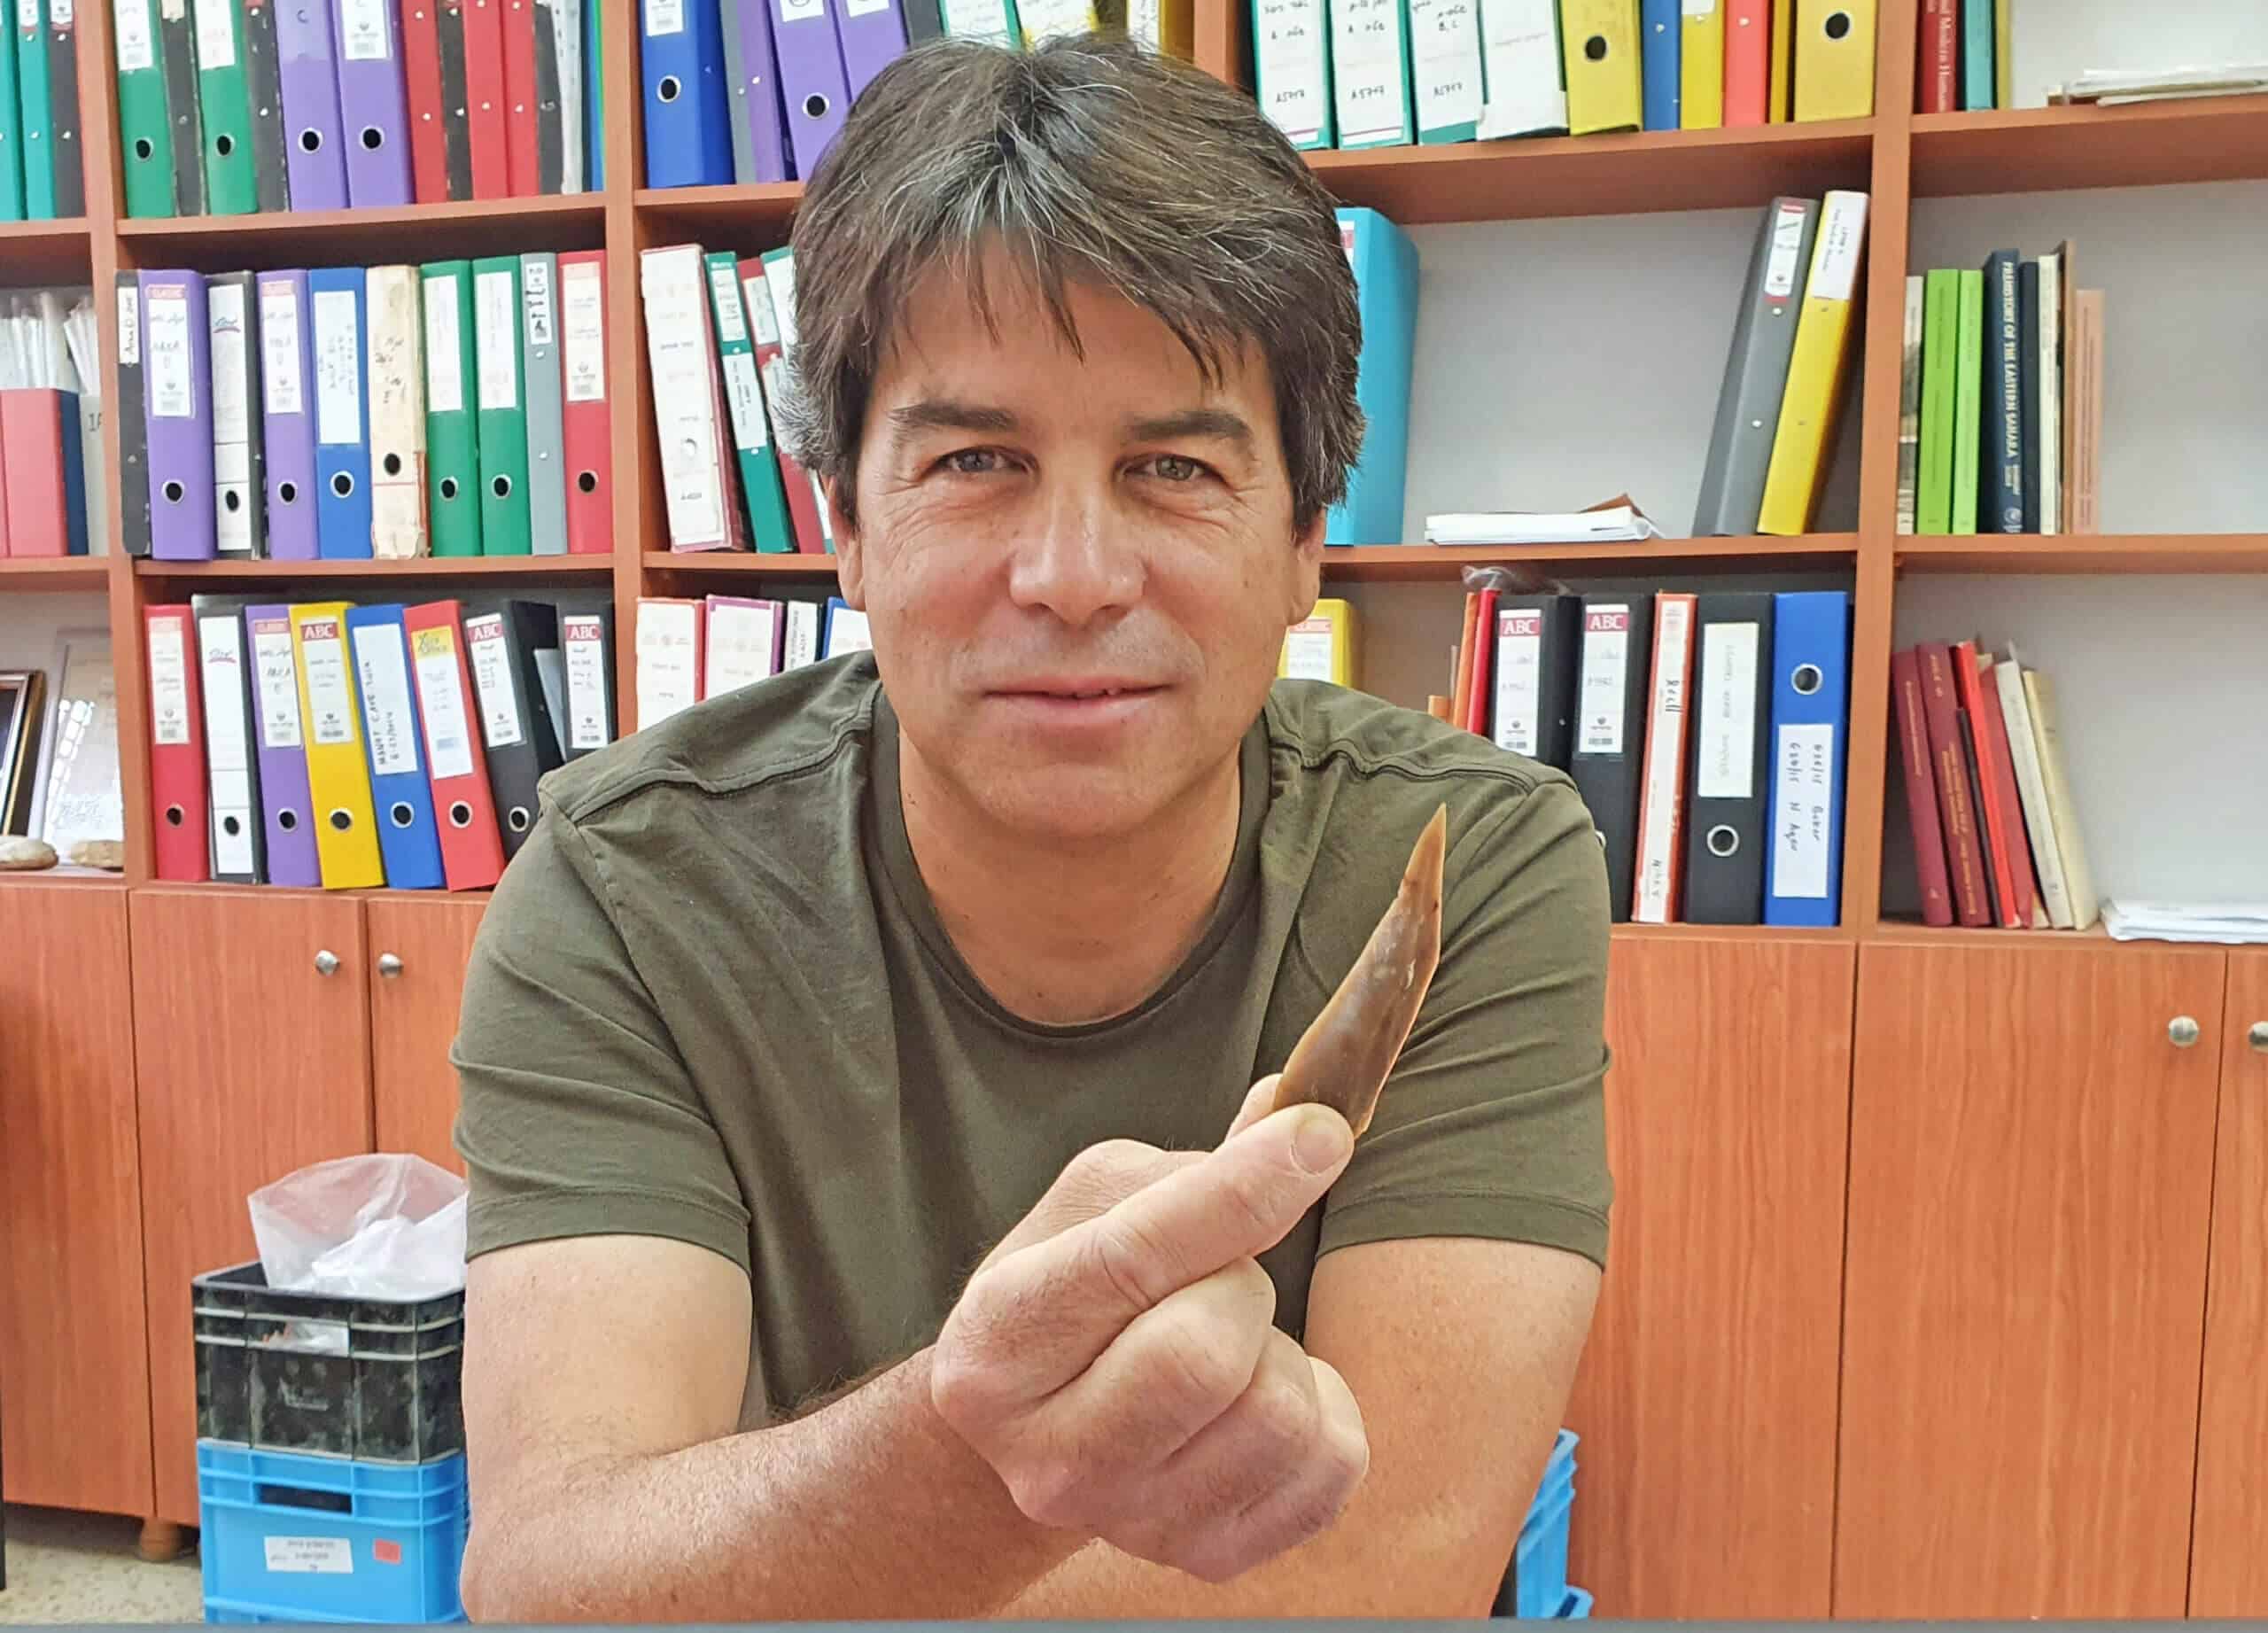 הפרה-הסטוריון, פרופ' עמרי ברזילי מחזיק בידו אבן צור מהחפירות באתר בוקר תחתית. צילום: רשות העתיקות